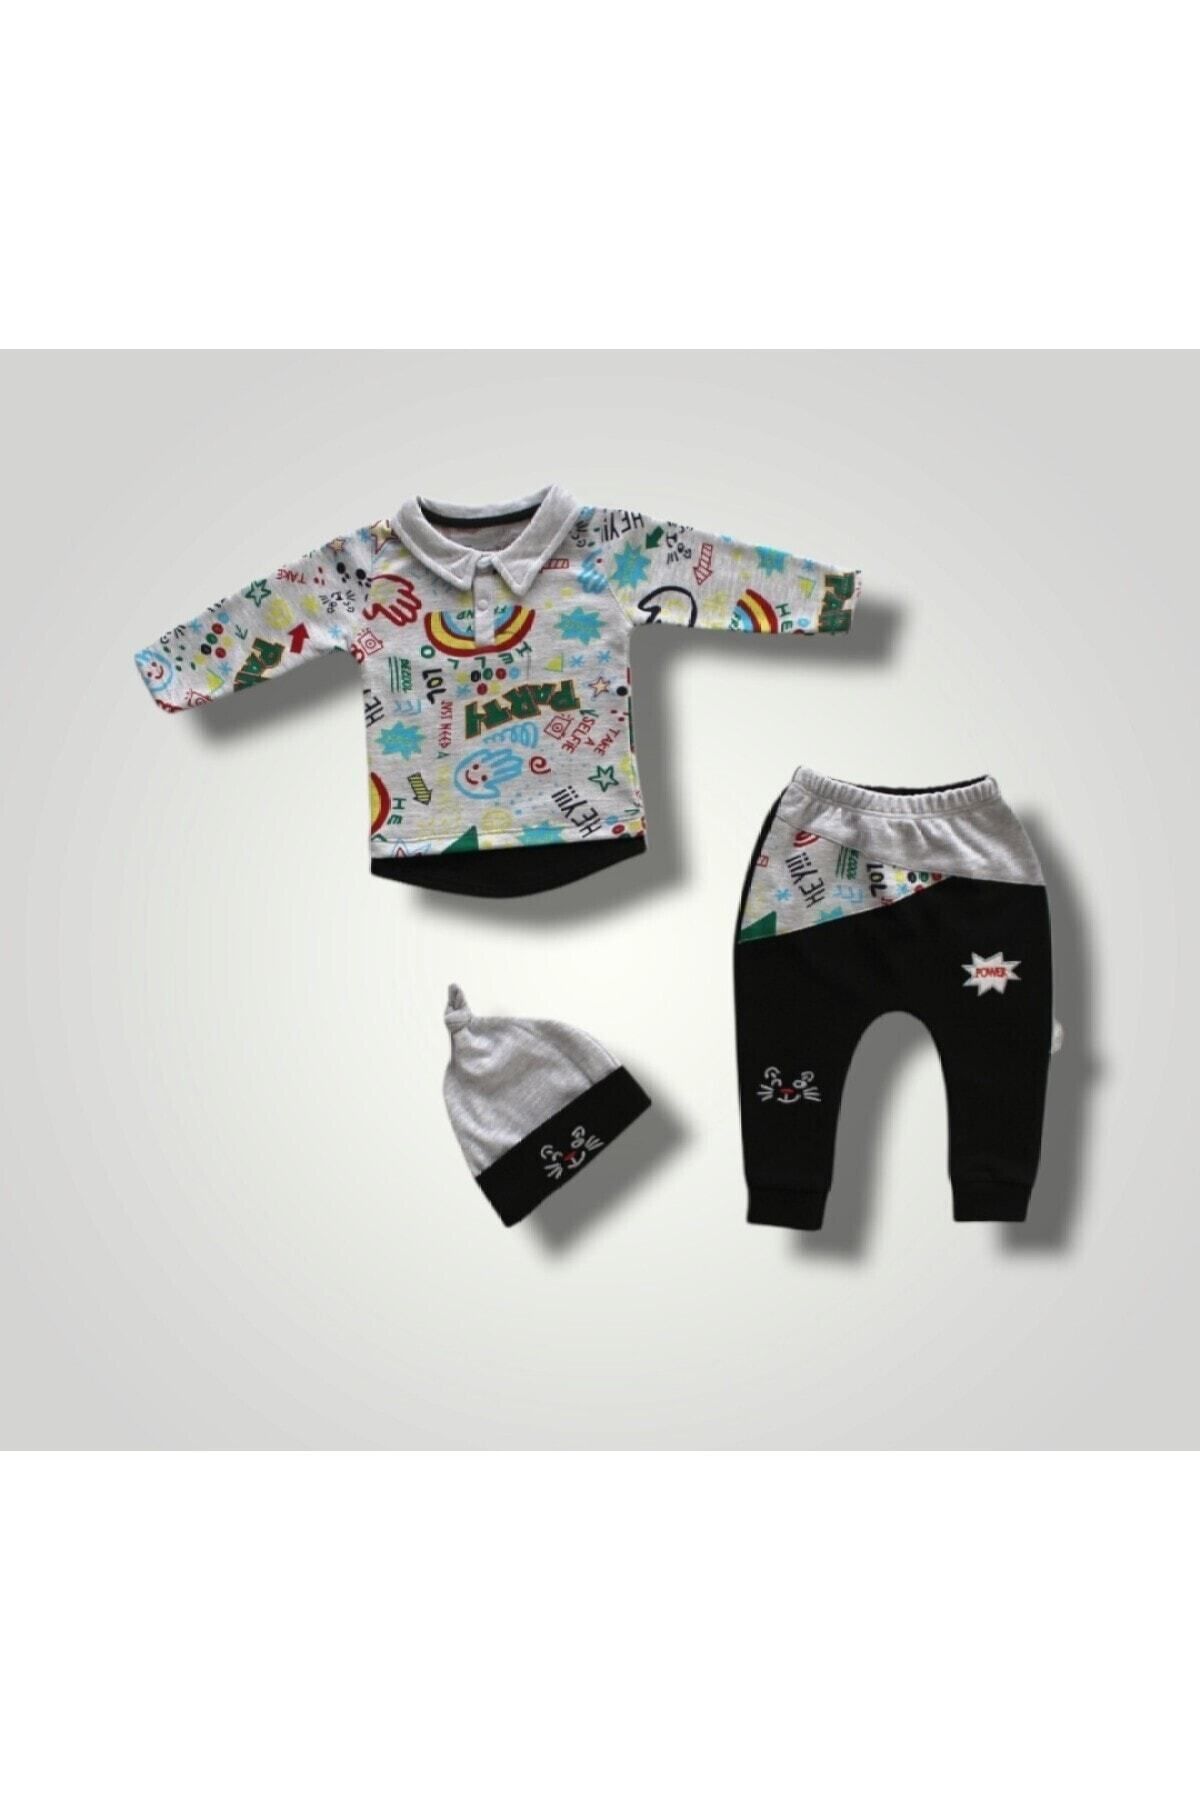 Tomuycuk 3lü Siyah Erkek Bebek Takım 3-6-9-12 Ay Bebek Takımları Kıyafetleri Bebek Giyim Hediyelik